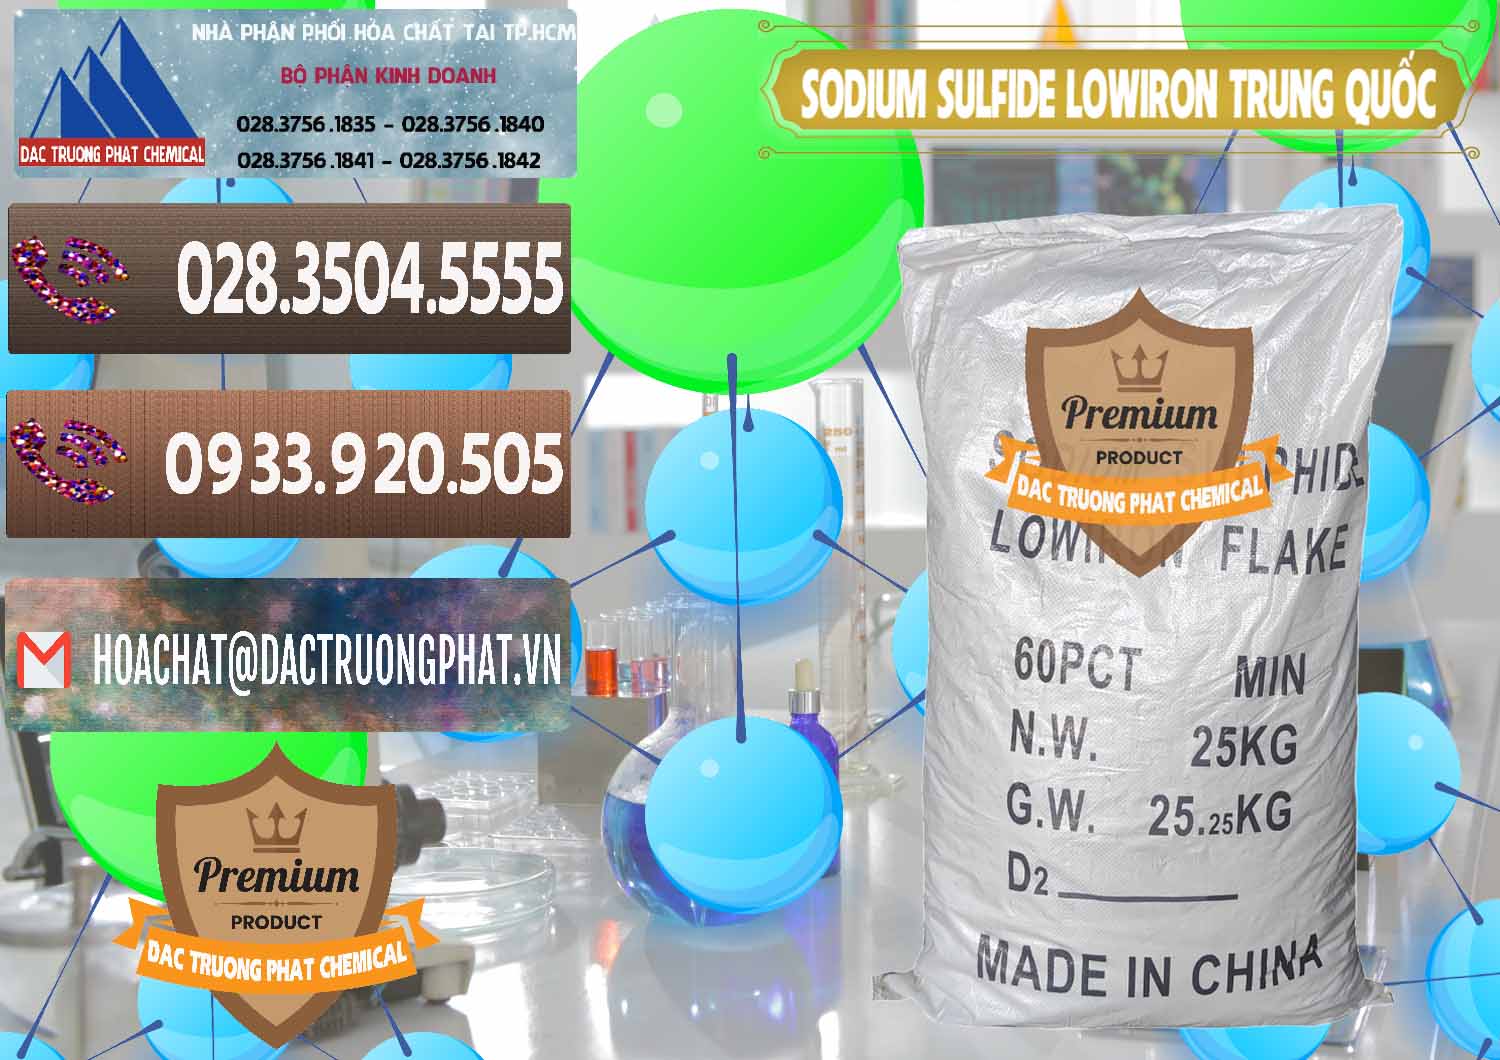 Nơi chuyên cung ứng - bán Sodium Sulfide NA2S – Đá Thối Lowiron Trung Quốc China - 0227 - Cty cung cấp & kinh doanh hóa chất tại TP.HCM - hoachatviet.net